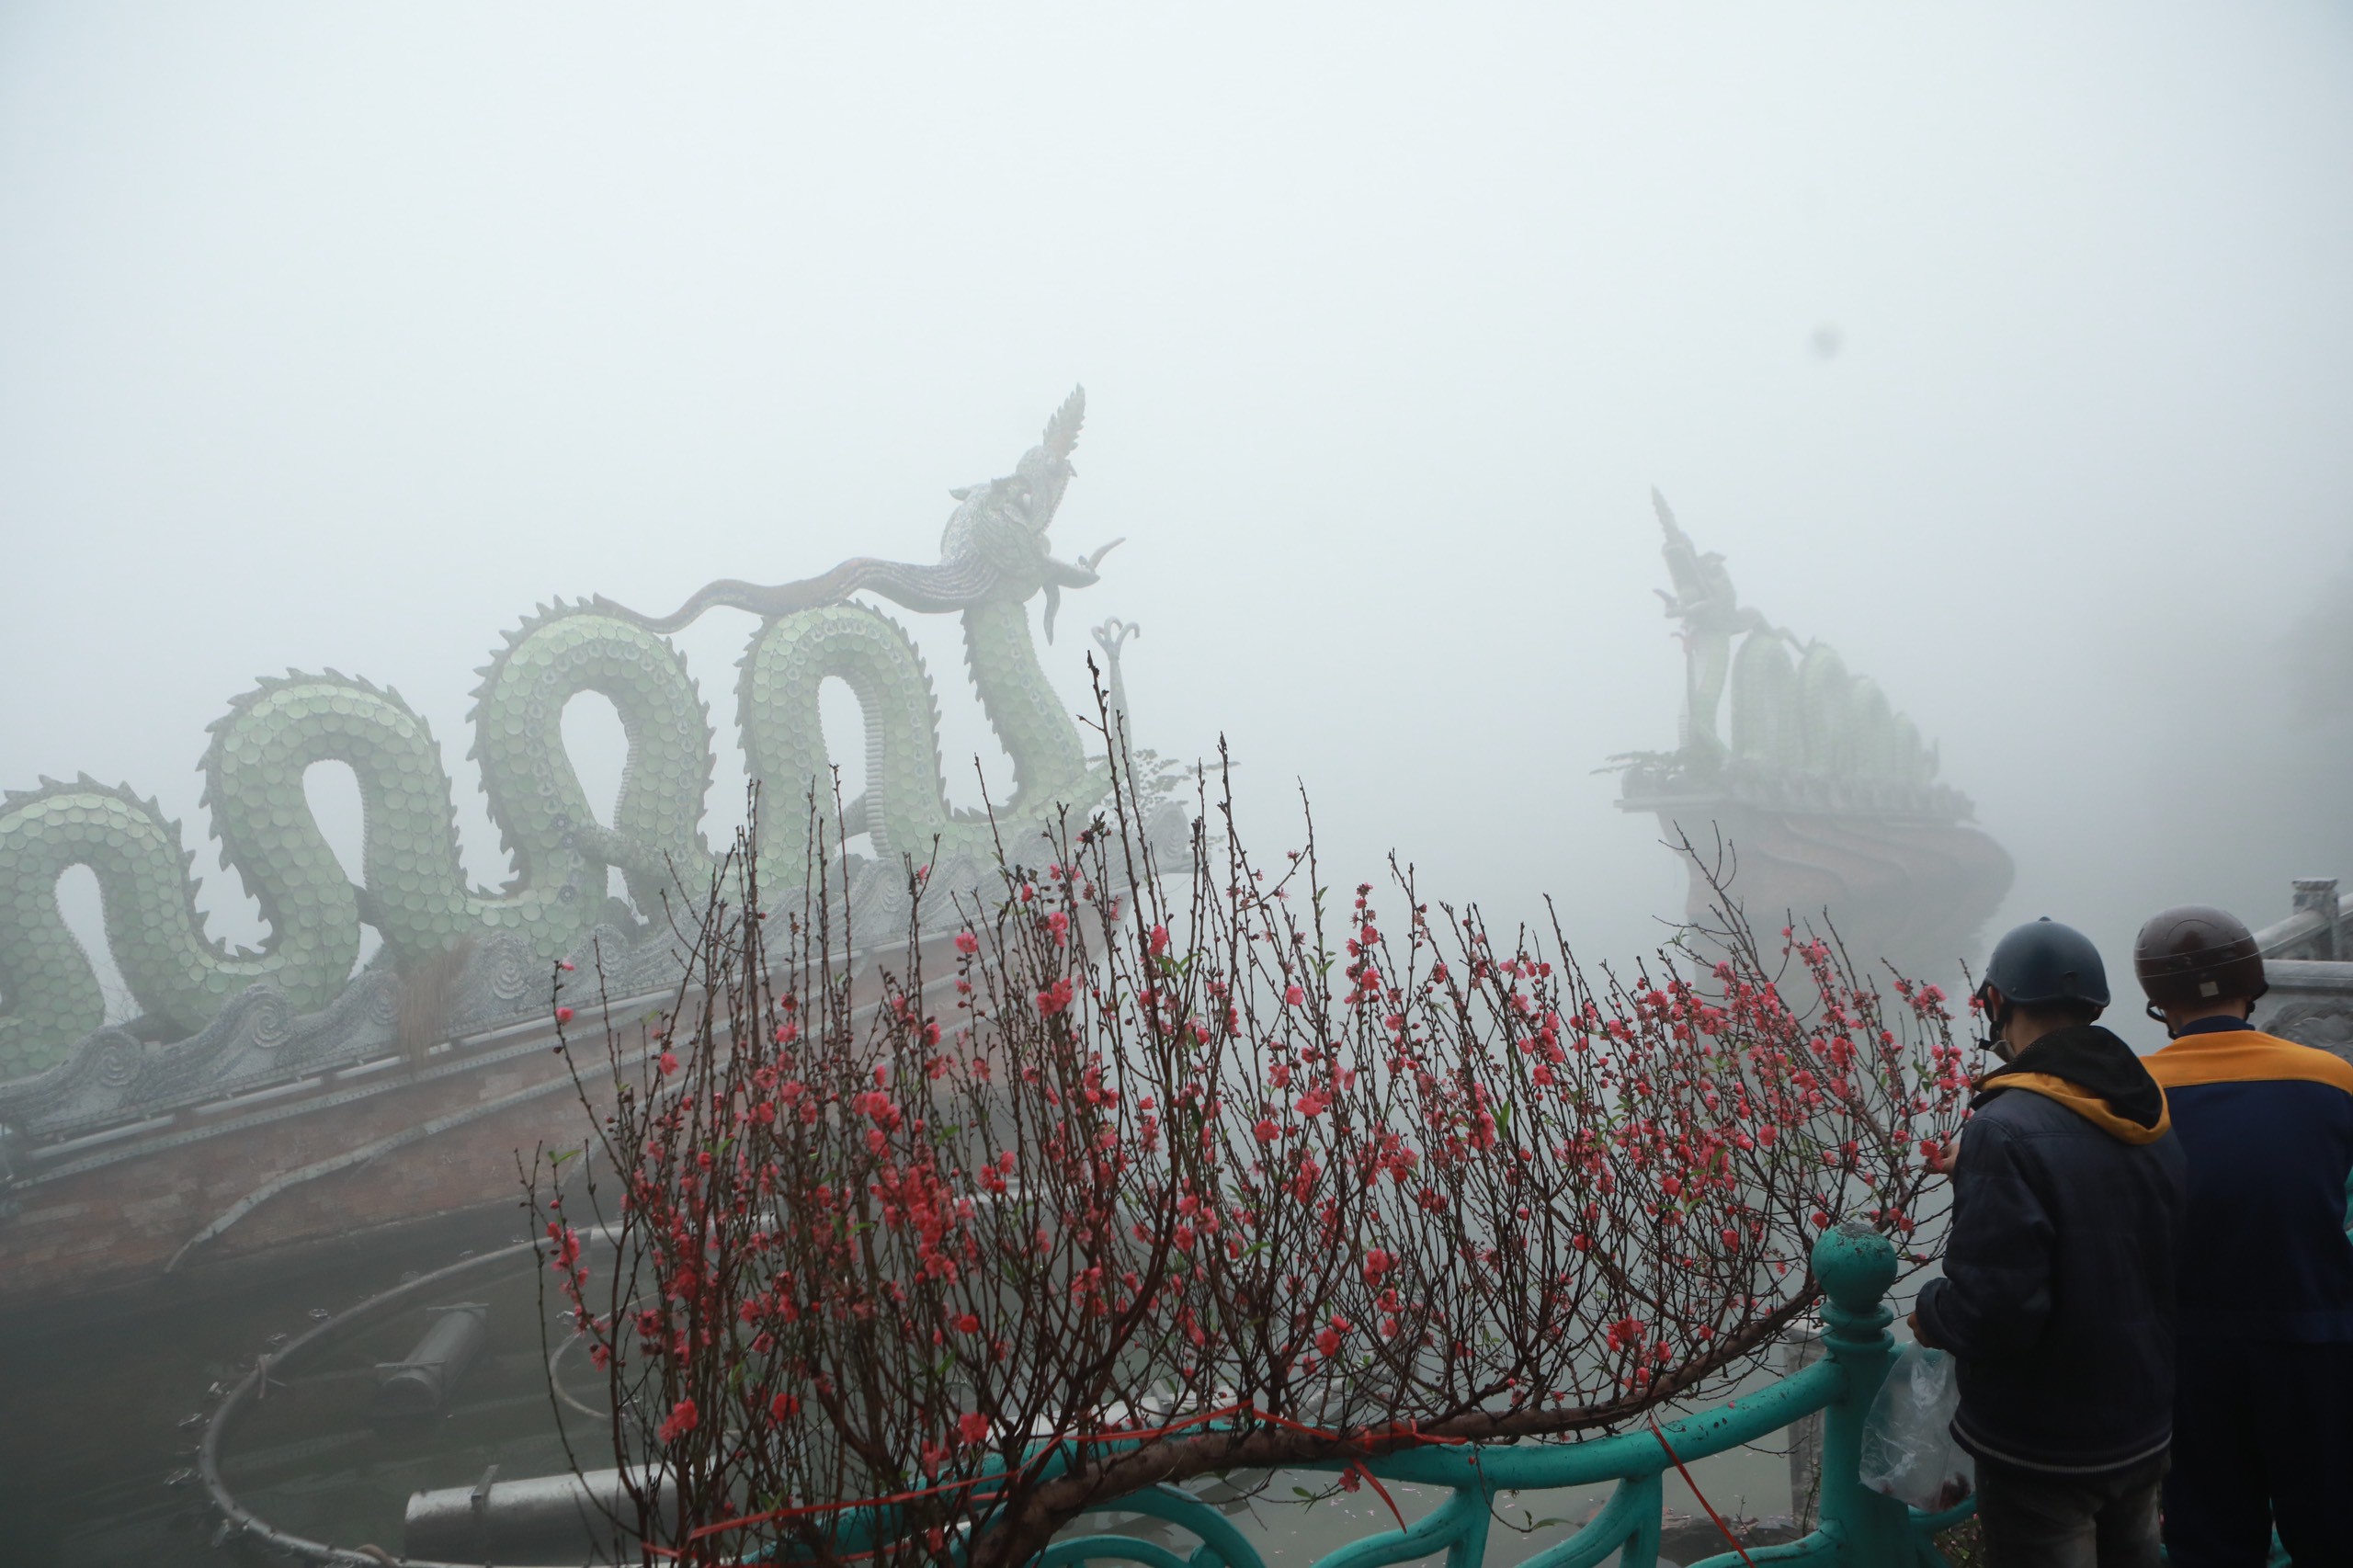 Đôi rồng bằng sứ ẩn hiện trên mặt nước hồ Tây trong sương mù